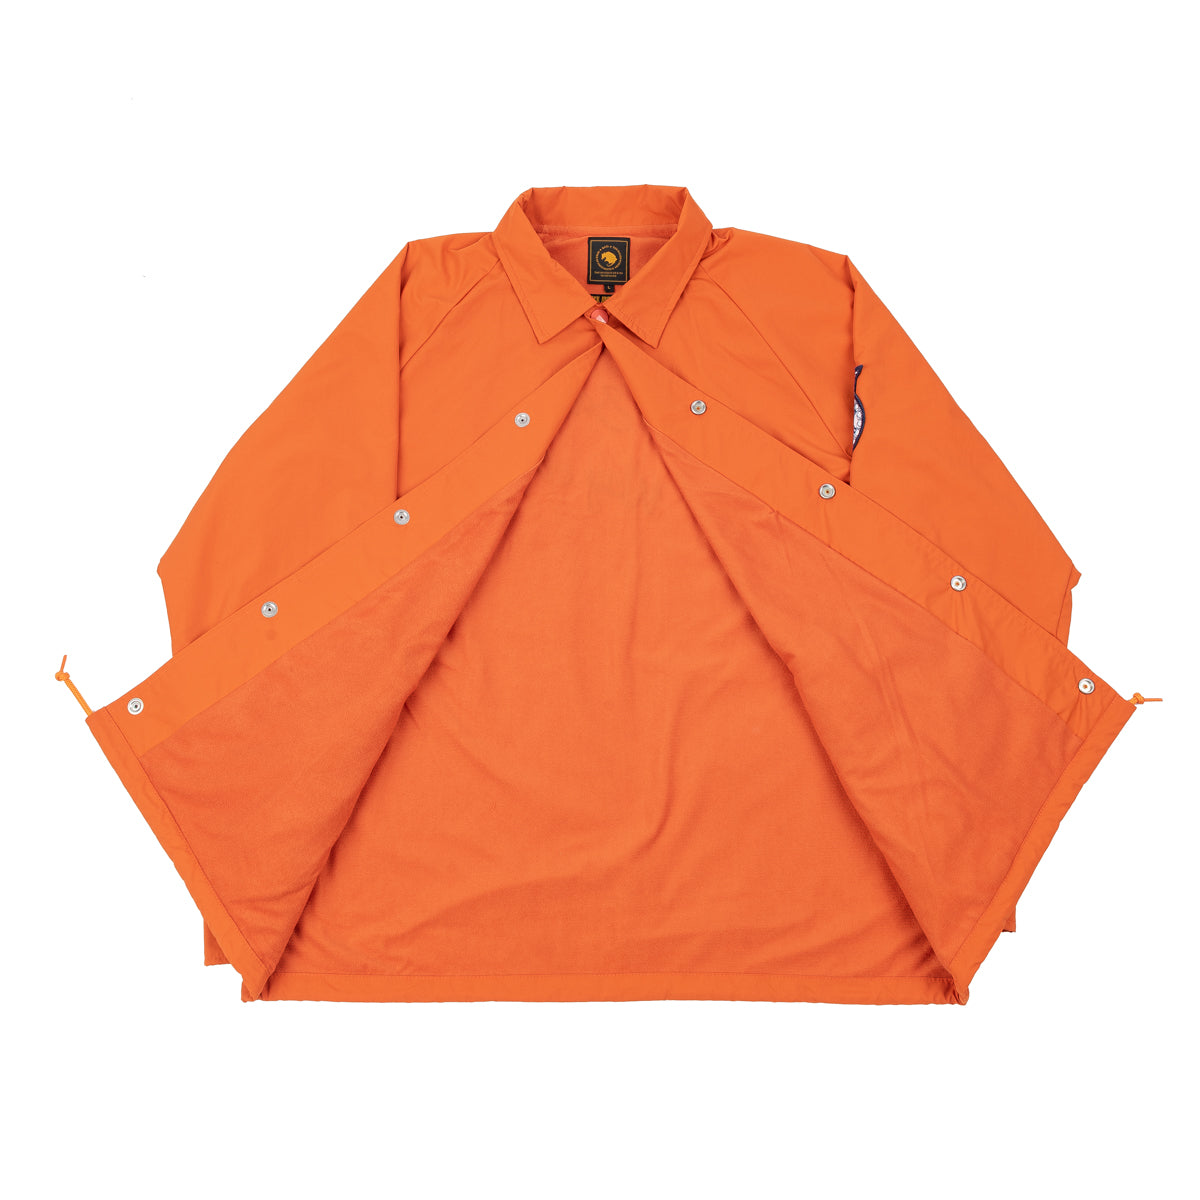 Coach Jacket - Orange